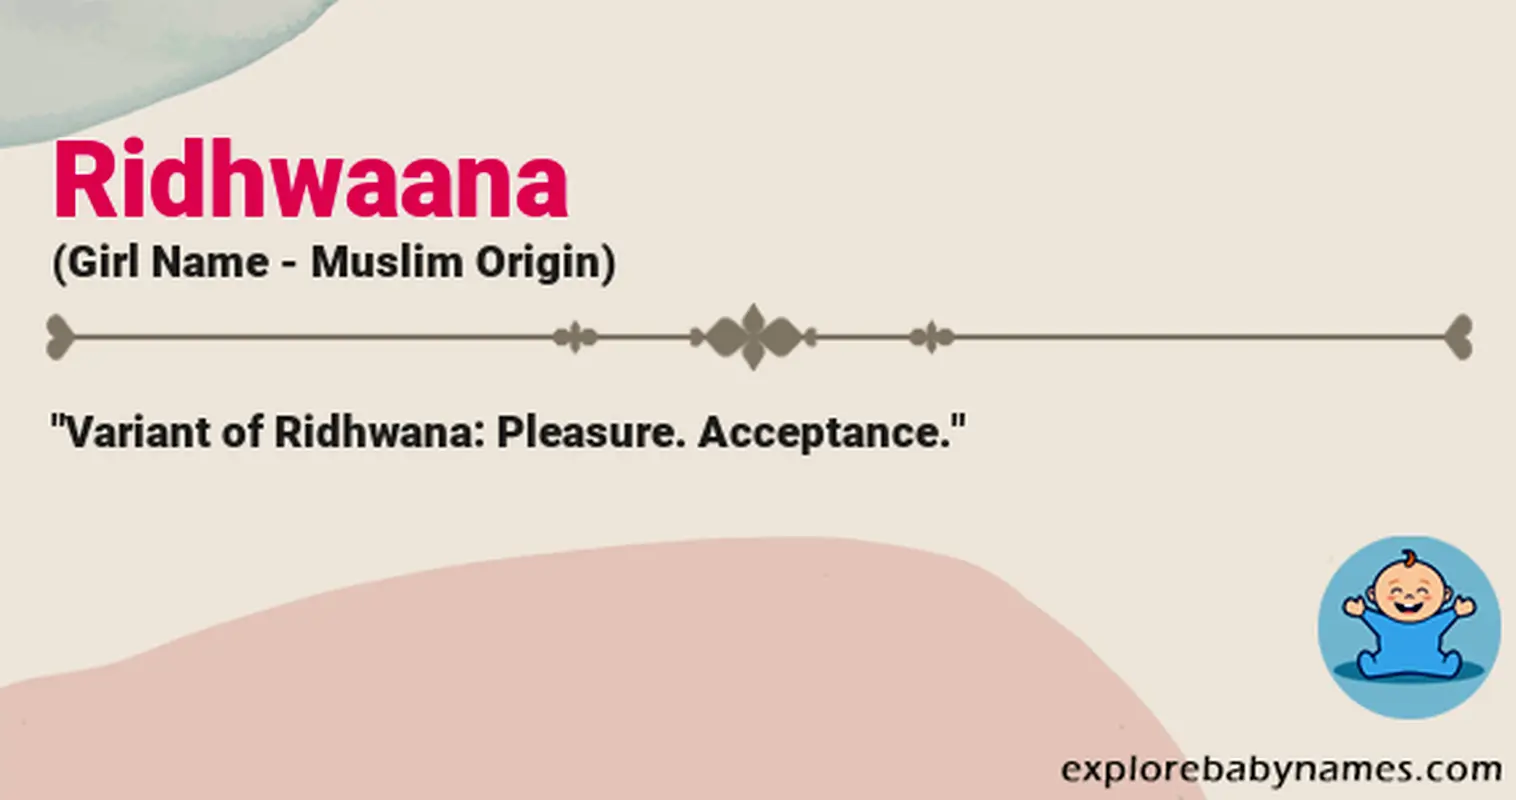 Meaning of Ridhwaana